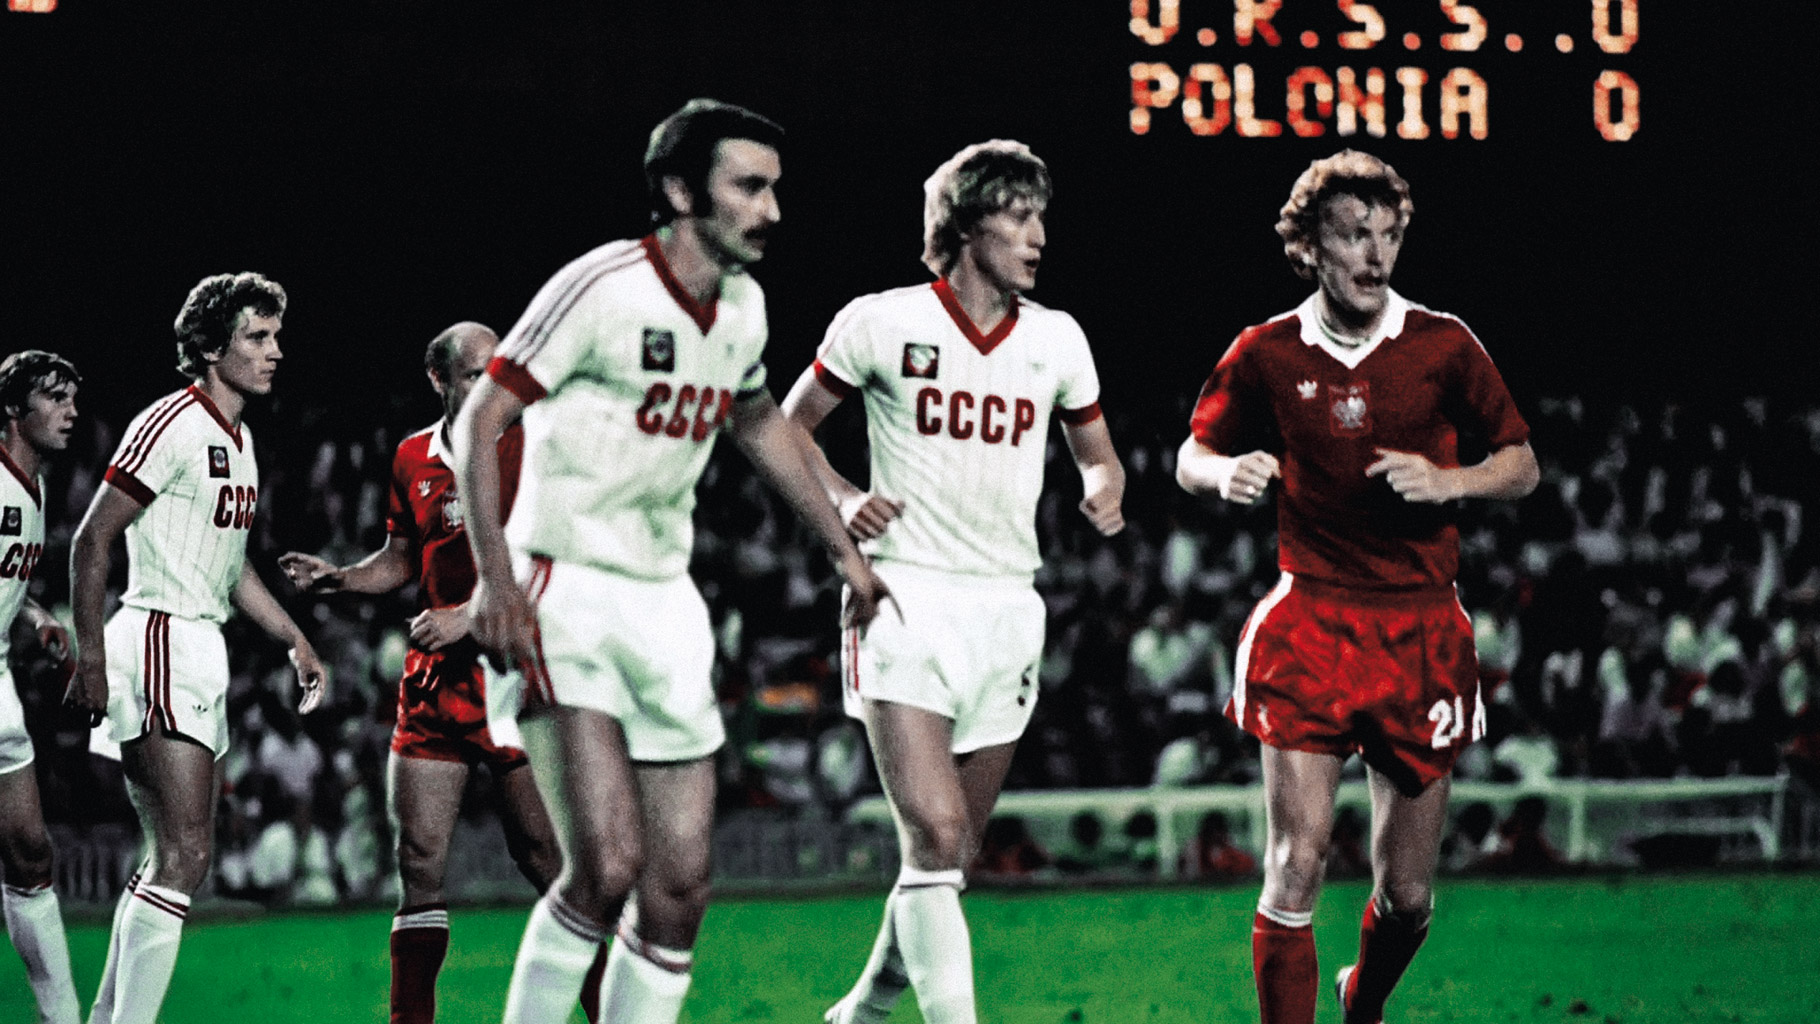 Mistrzostwa Swiata W Pilce Noznej 1982 Kulturotwórcza rola piłki nożnej | Riplej, riplej, riplej - Polityka.pl